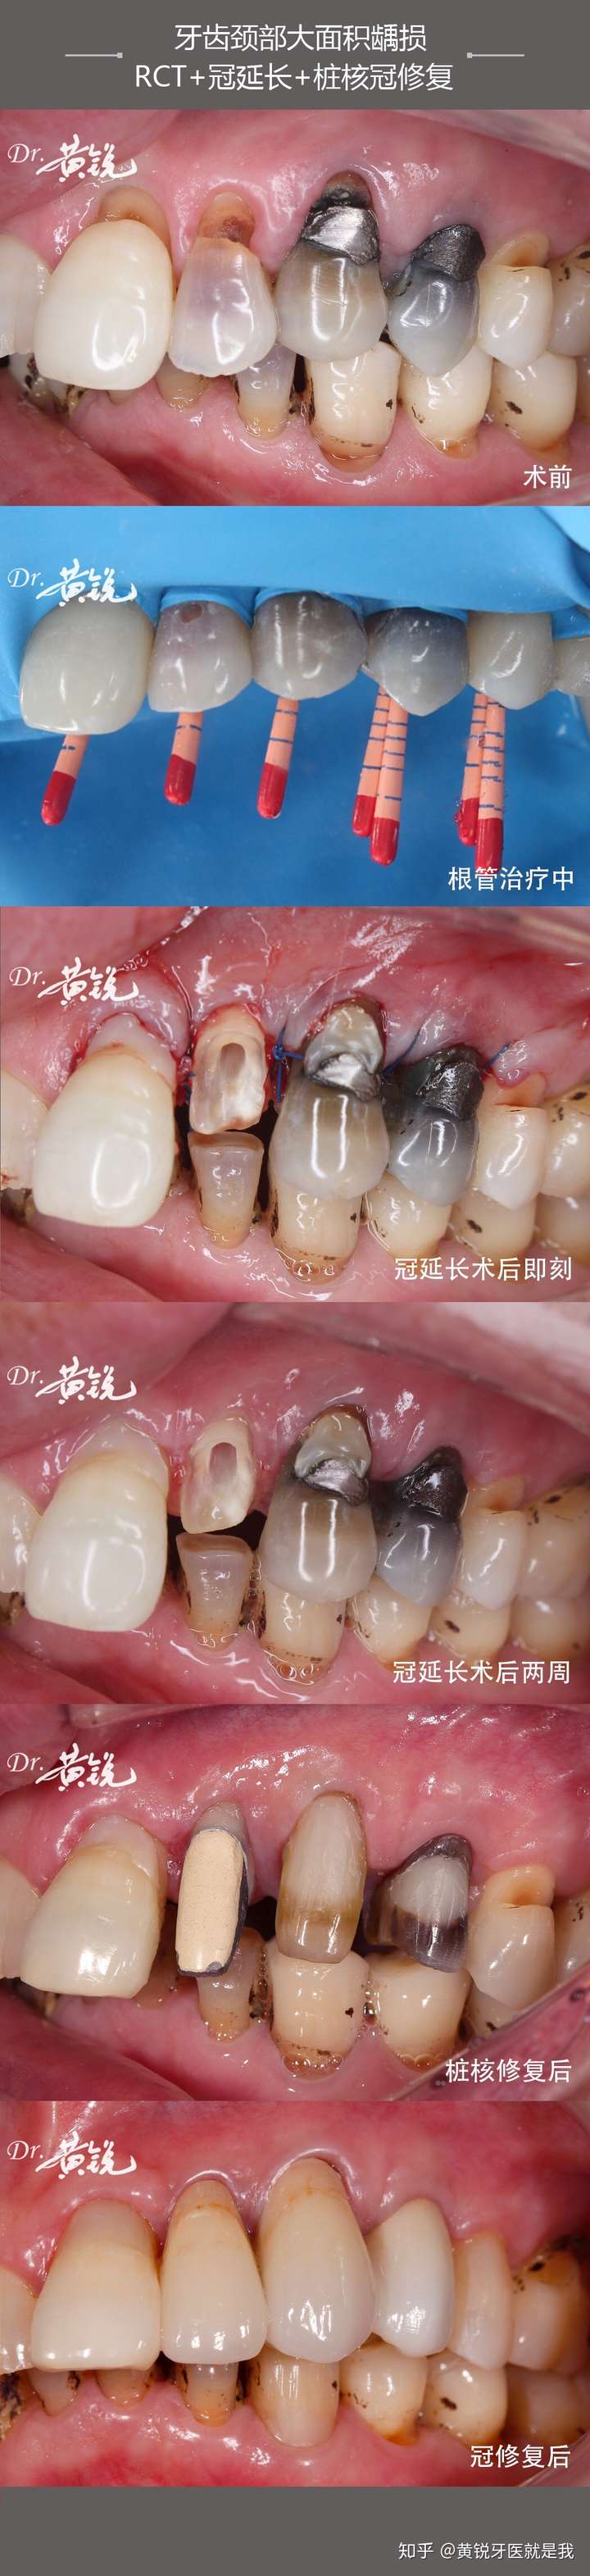 牙齿颈部大面积龋损rct冠延长桩核冠修复